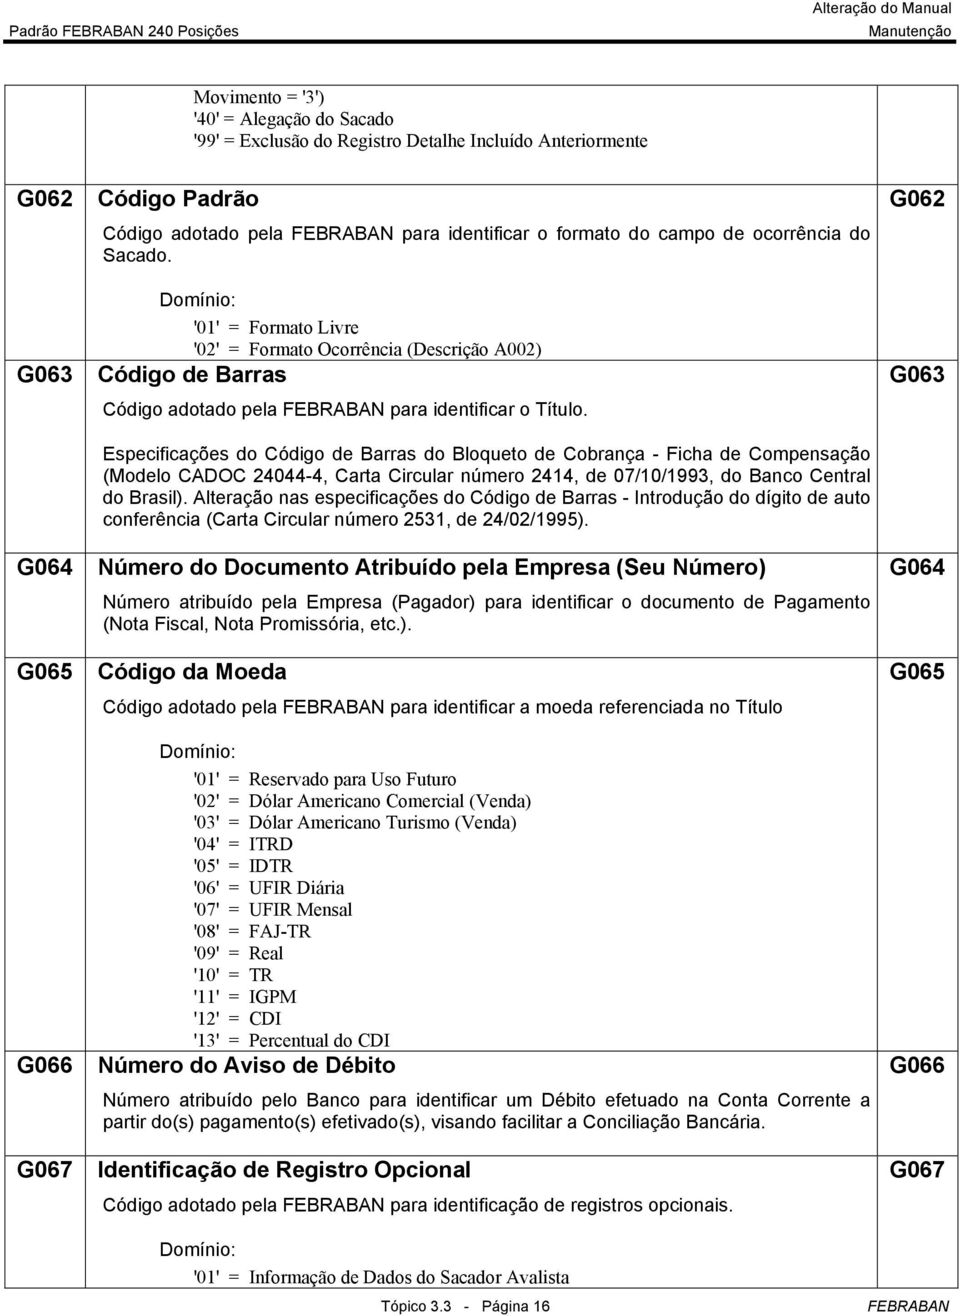 Especificações do Código de Barras do Bloqueto de Cobrança - Ficha de Compensação (Modelo CADOC 24044-4, Carta Circular número 2414, de 07/10/1993, do Banco Central do Brasil).